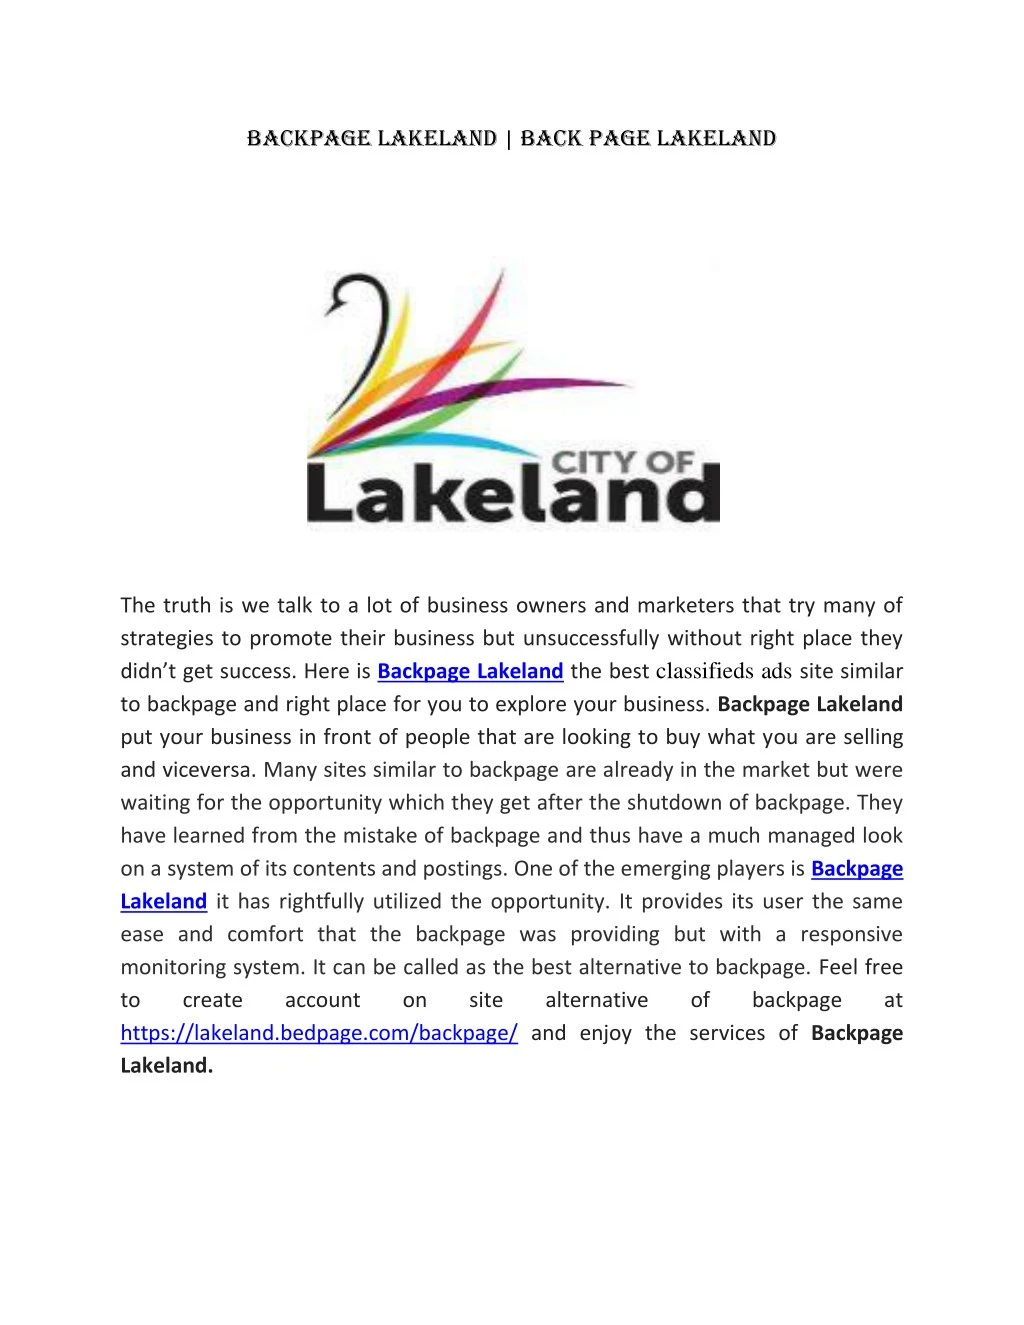 backpage lakeland back page lakeland